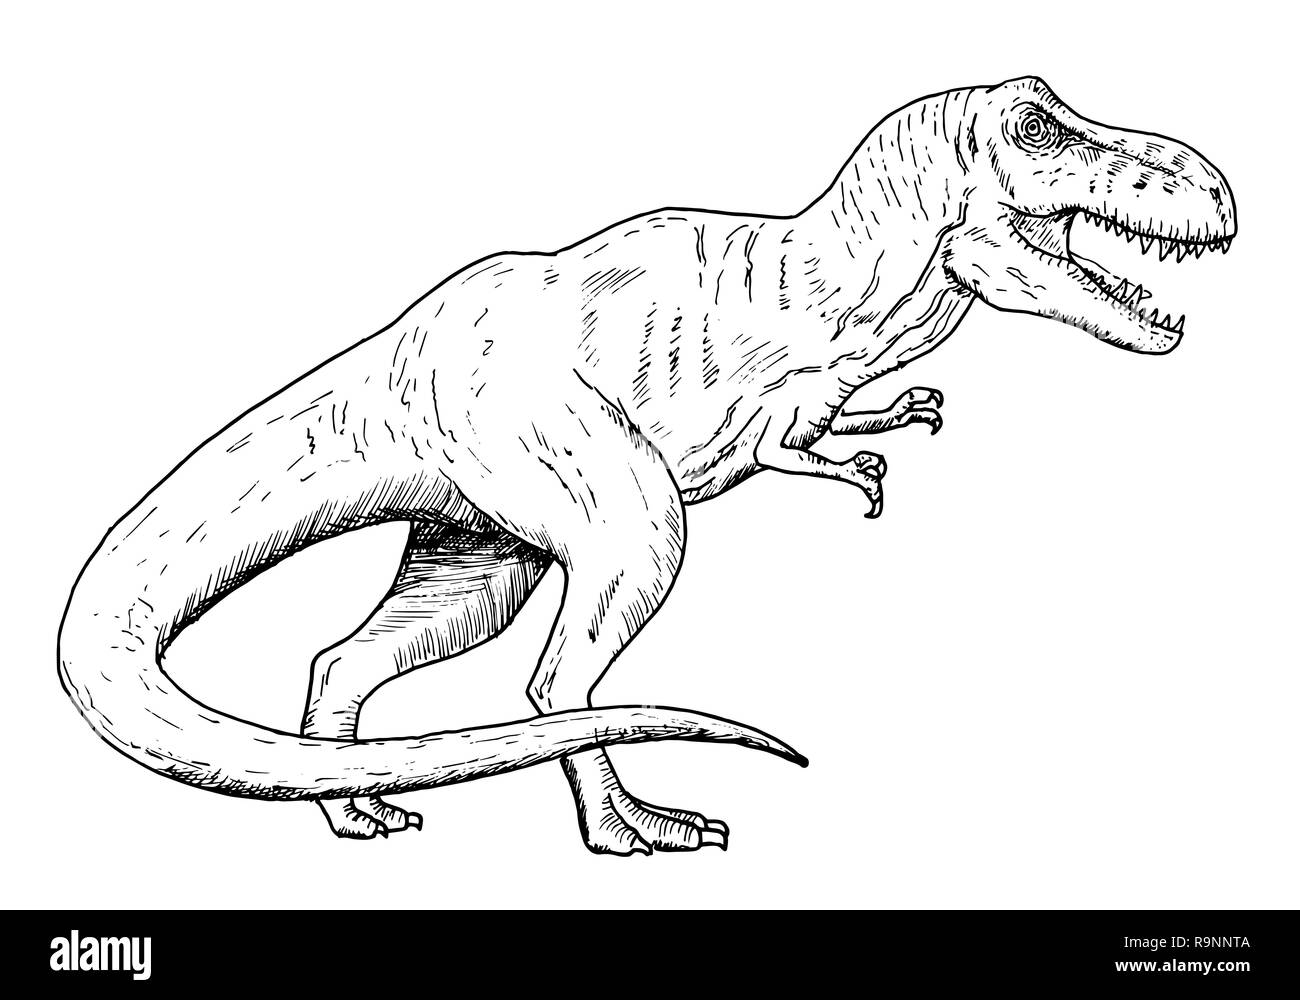 Disegno di dinosauro - schizzo a mano del Tyrannosaurus rex, in bianco e  nero illustrazione Immagine e Vettoriale - Alamy